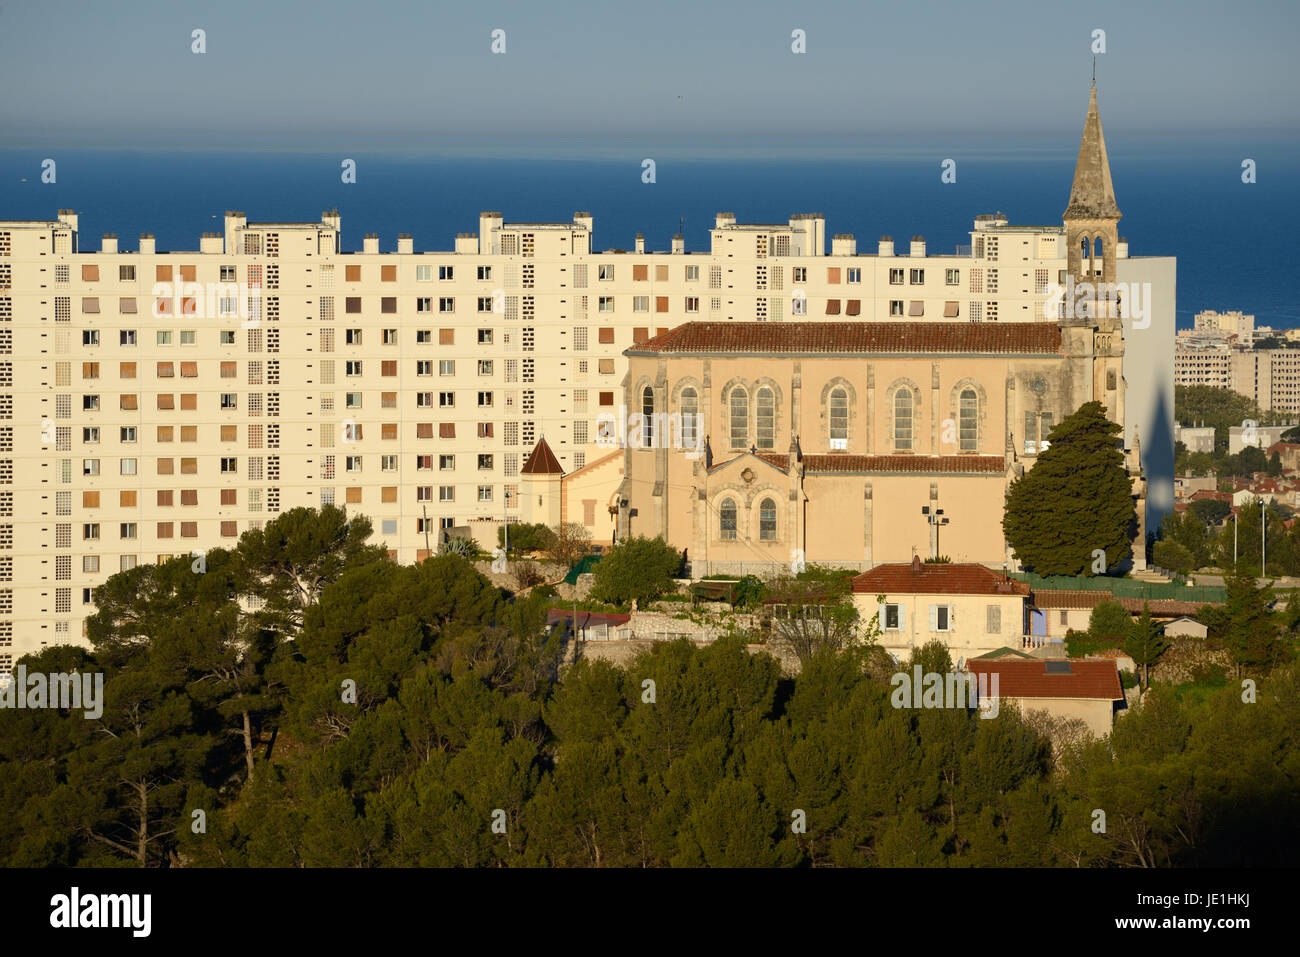 Chapelle ou église de Saint Joseph au le Redon, Marseille, ville, Mer Méditerranée et 1960 Tour moderniste Valmante Banque D'Images